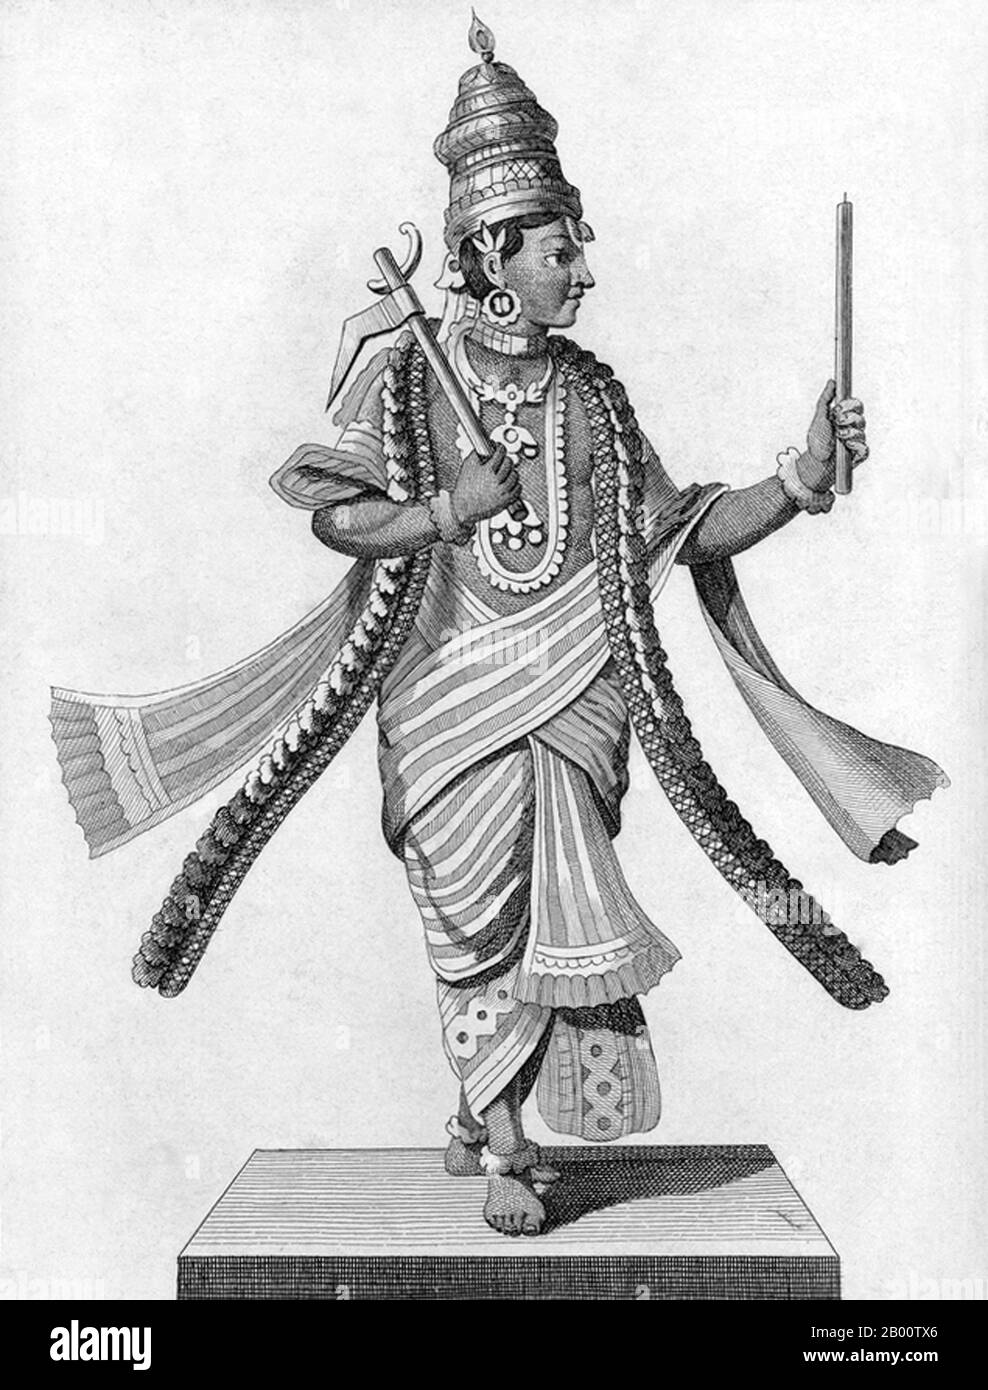 Inde: 'Septième Avatar (incarnation) de Vishnu comme Balarama, frère de Krishna'. Illustration de Pierre Sonnerat (1748-1814), 1782. Pierre Sonnerat (1748-1814) est un naturaliste et explorateur français qui a effectué plusieurs voyages en Asie du Sud-est entre 1769 et 1781. Il a publié ce compte-rendu en deux volumes de son voyage de 1774-81 en 1782. Le volume 1 traite exclusivement de l'Inde, dont la culture Sonnerat admirait beaucoup, et est particulièrement remarquable pour sa discussion élargie de la religion en Inde, l'hindouisme en particulier. Le livre est illustré avec des gravures basées sur les dessins de Sonnerat. Banque D'Images